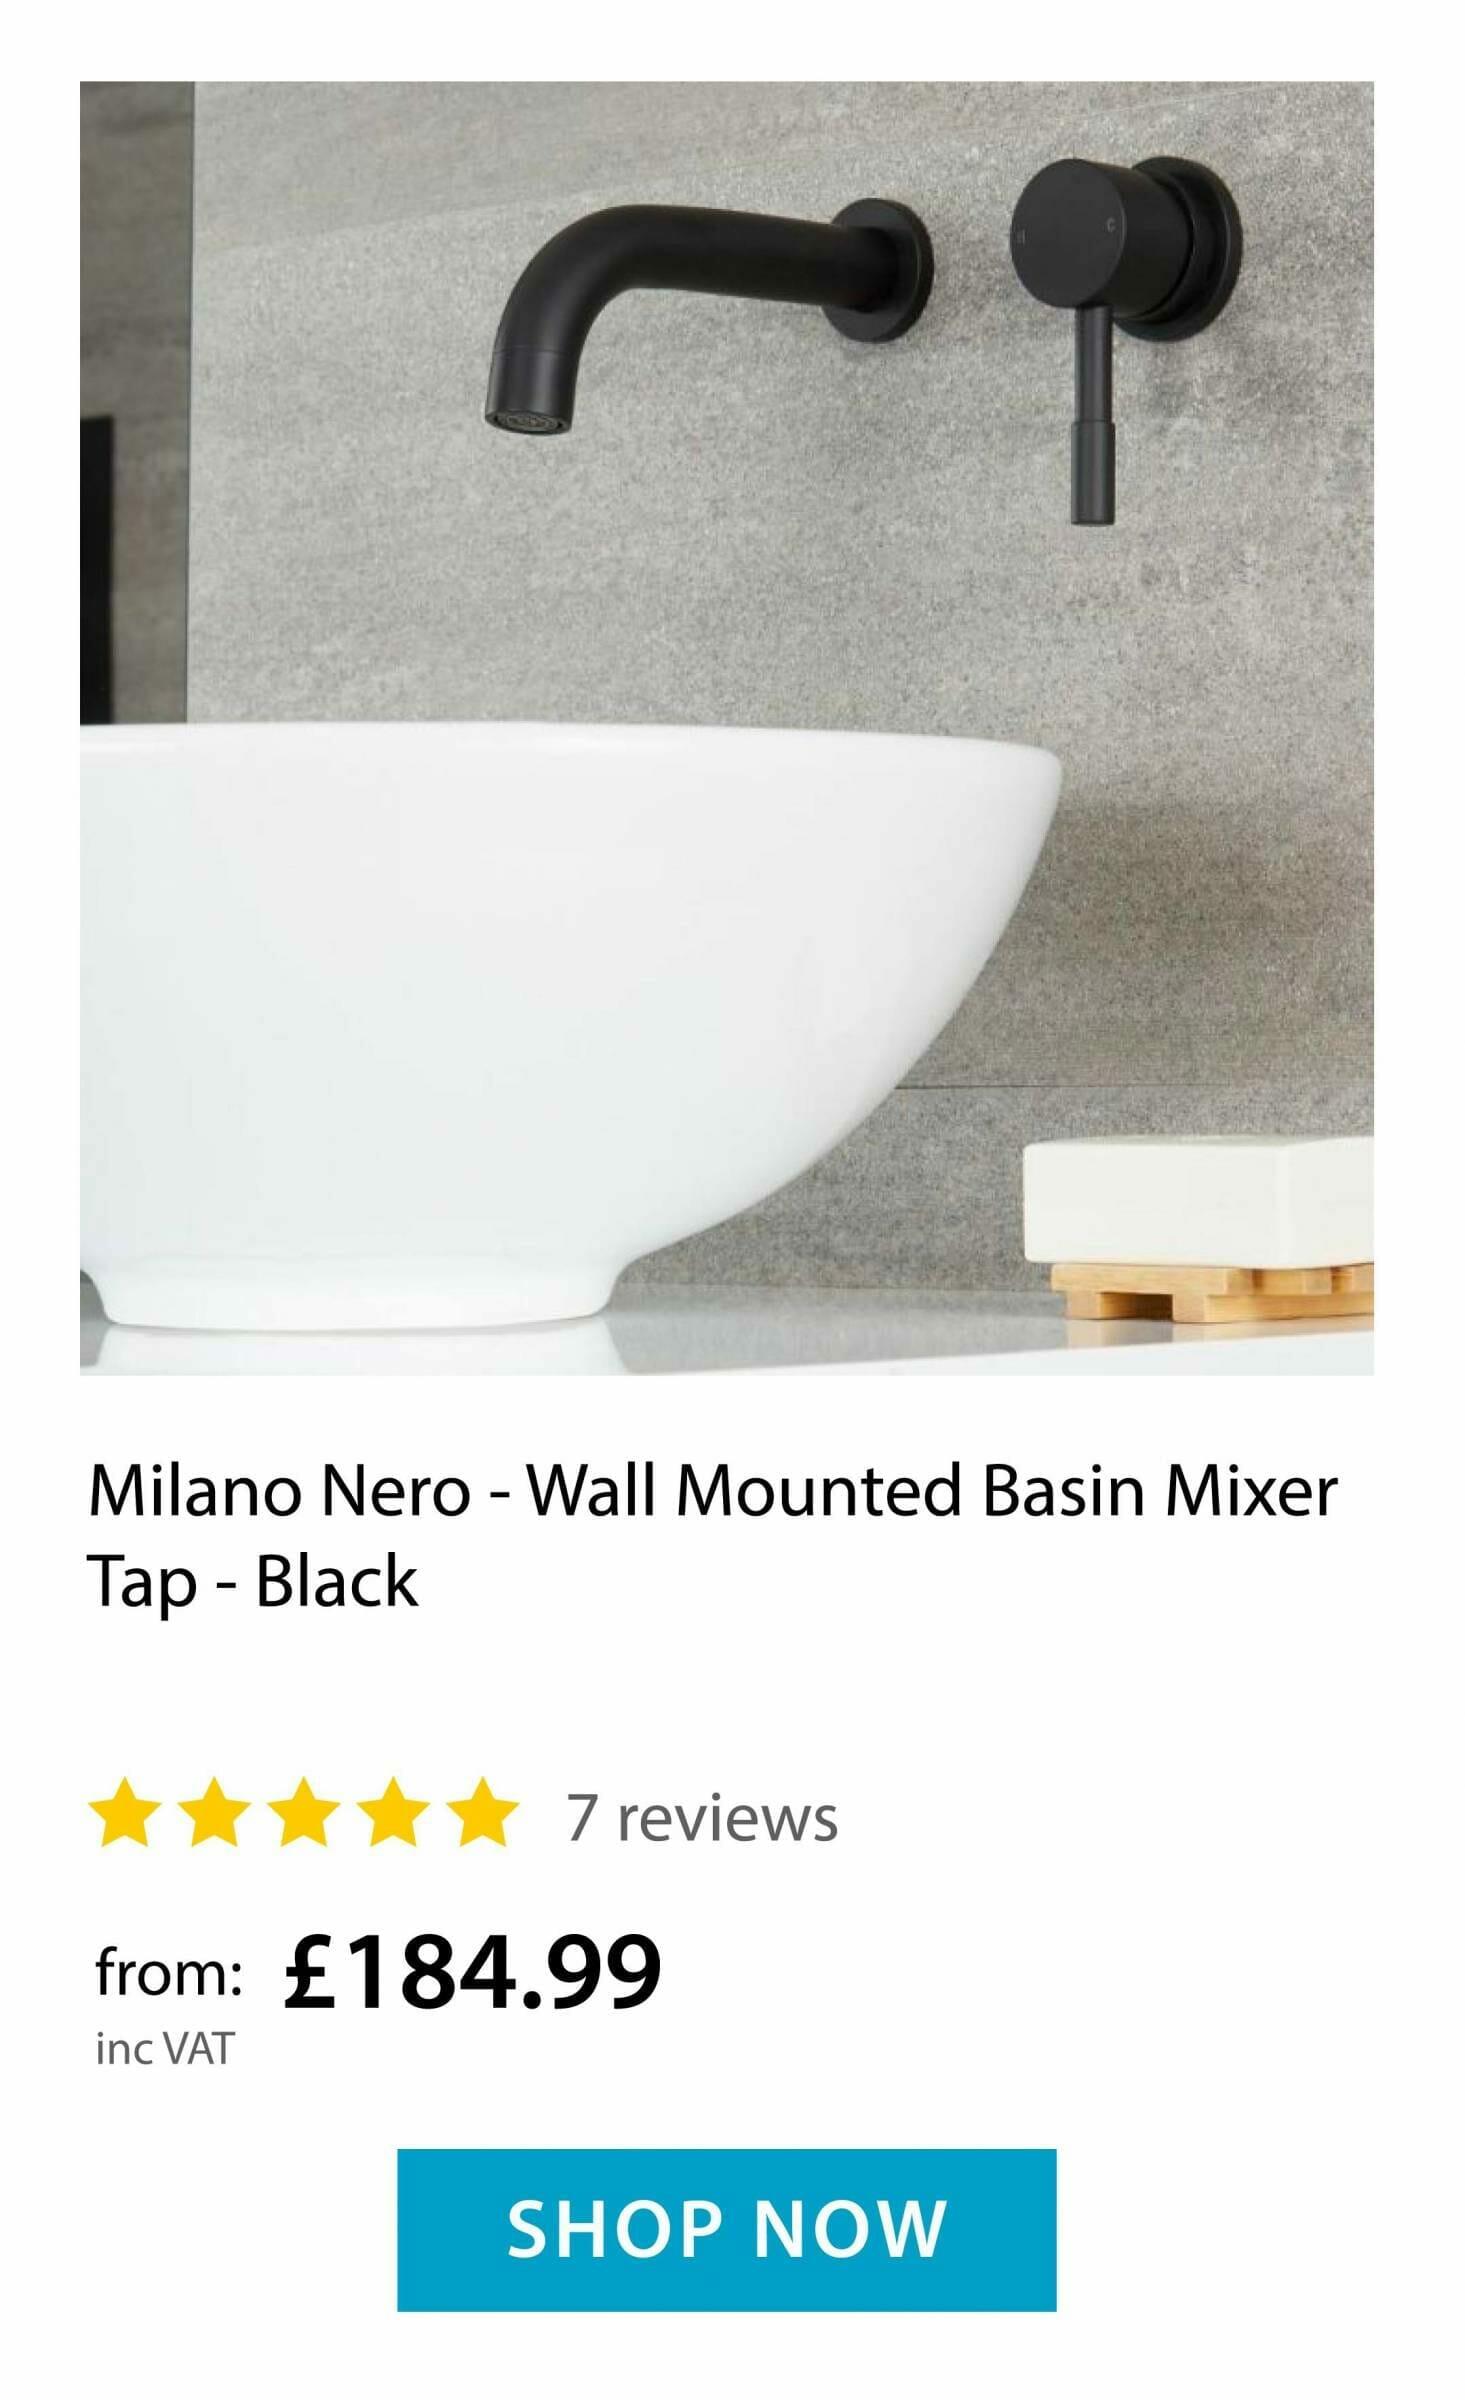 Milano Nero - wall mounted Basin Mixer tap